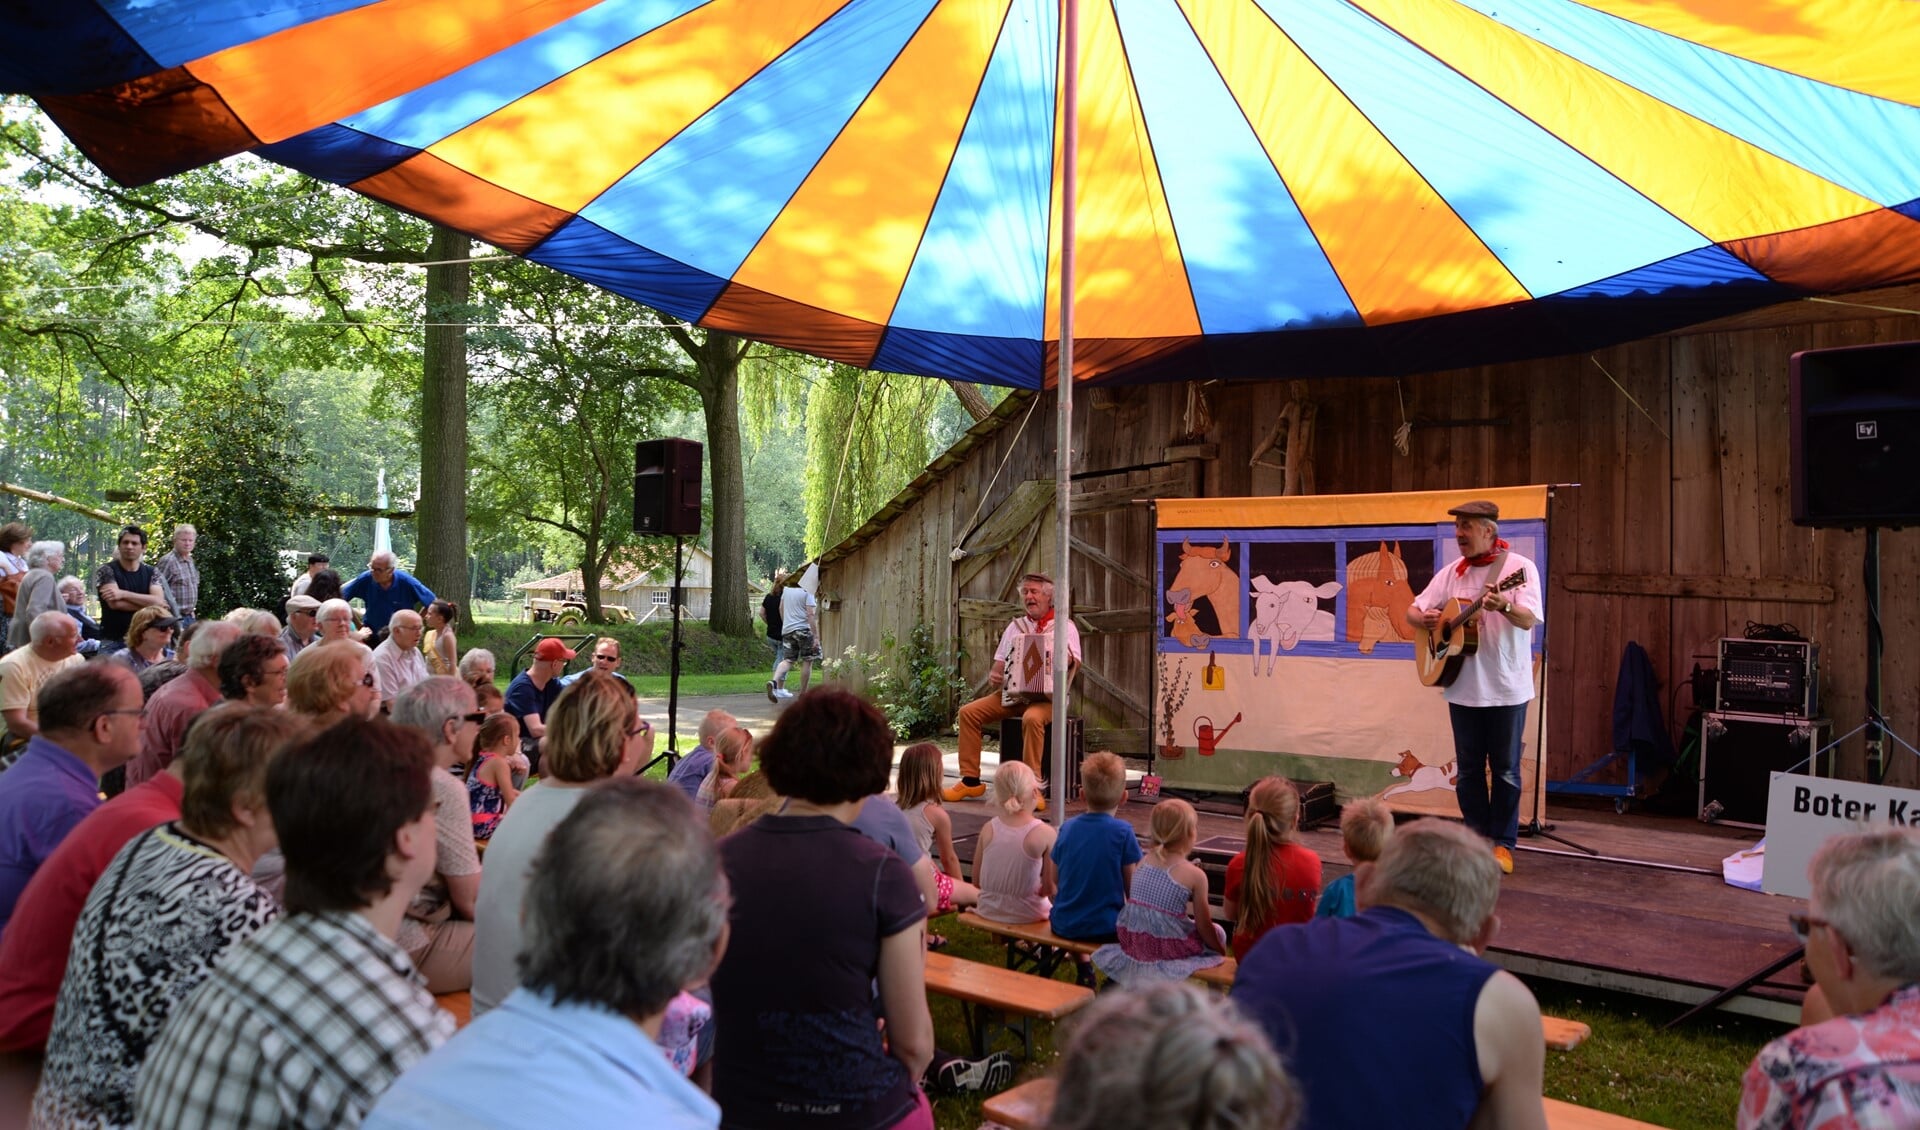 Muzikanten zingen liedjes in de streektaal van de Achterhoek en West-Münsterland. Foto: PR